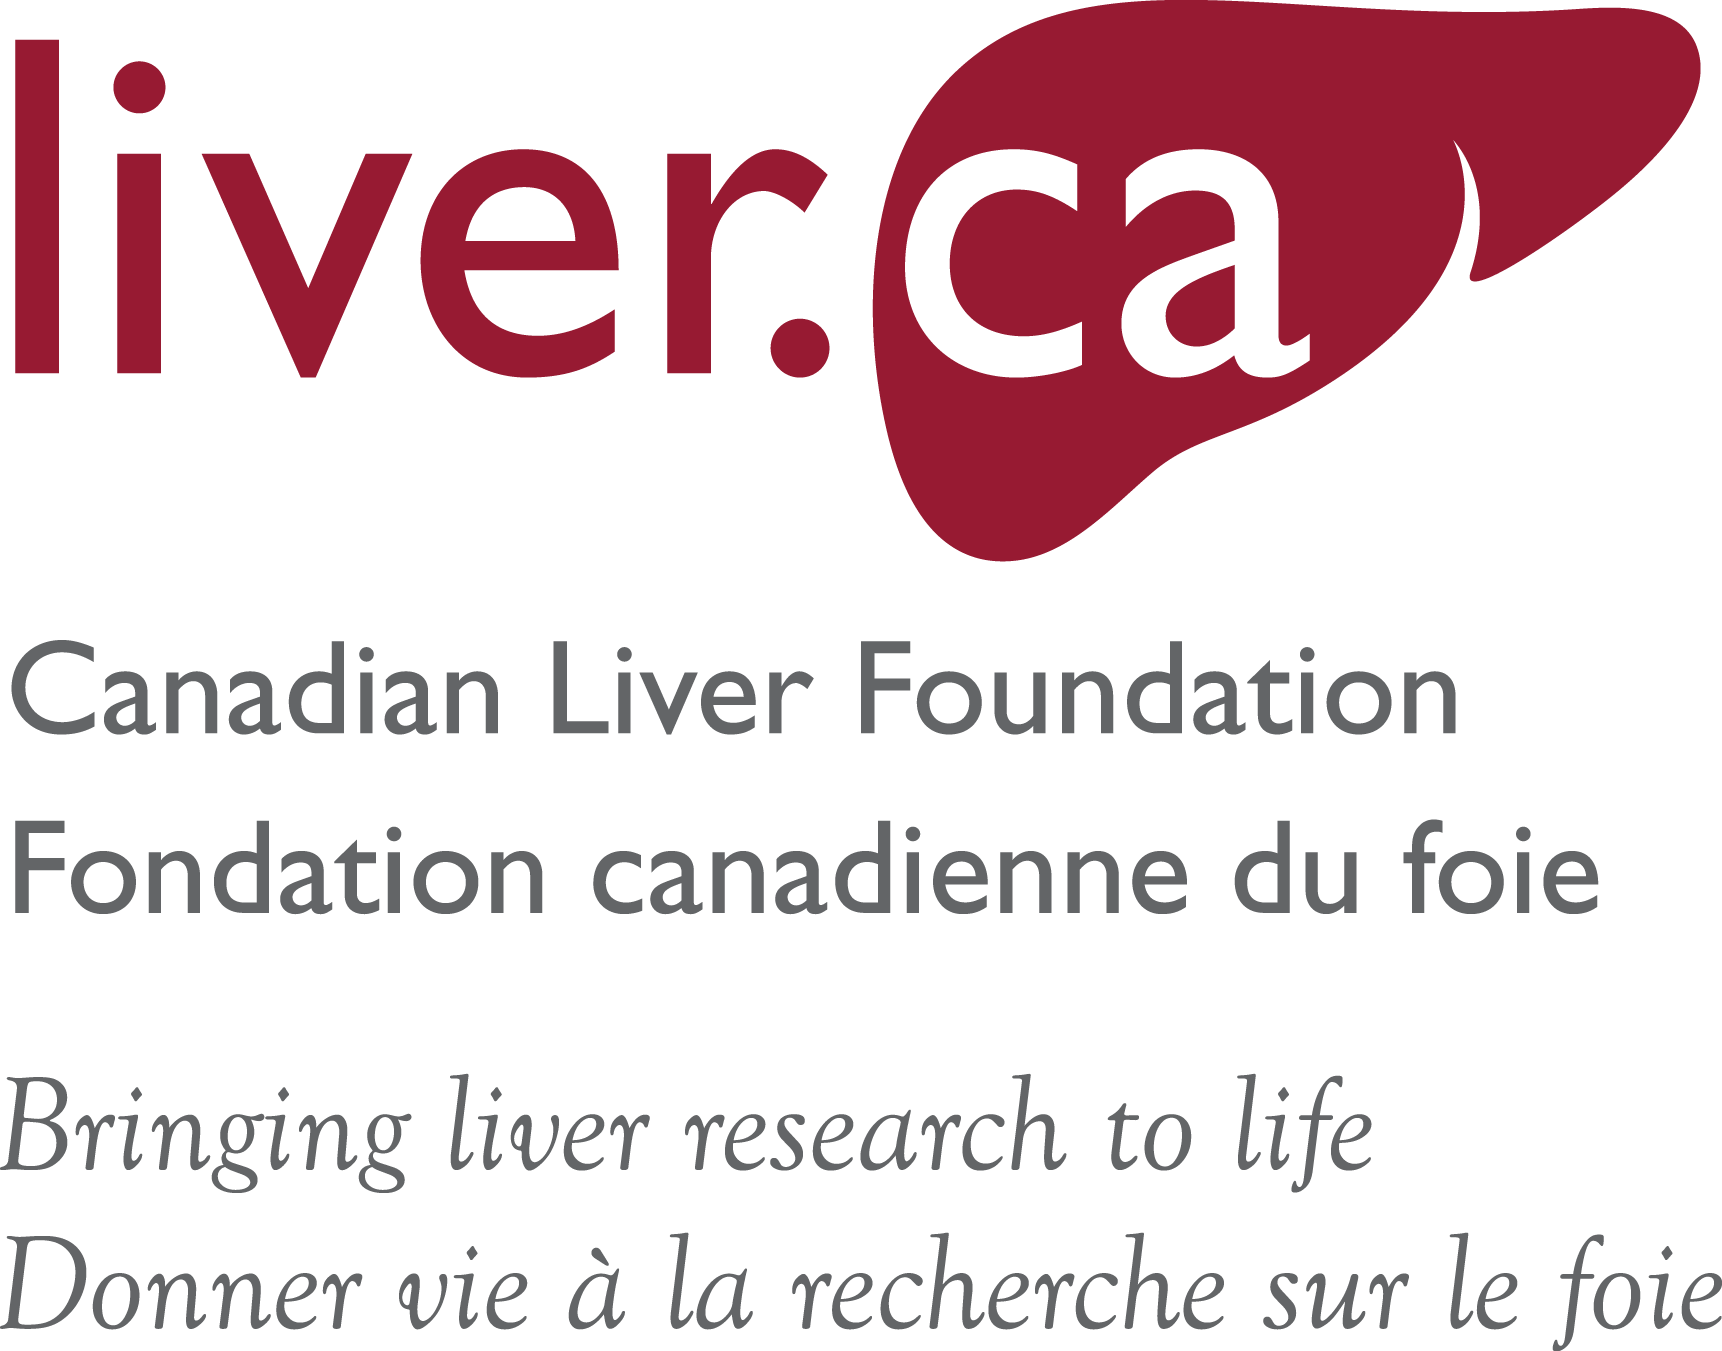 The Canadian Liver Foundation logo